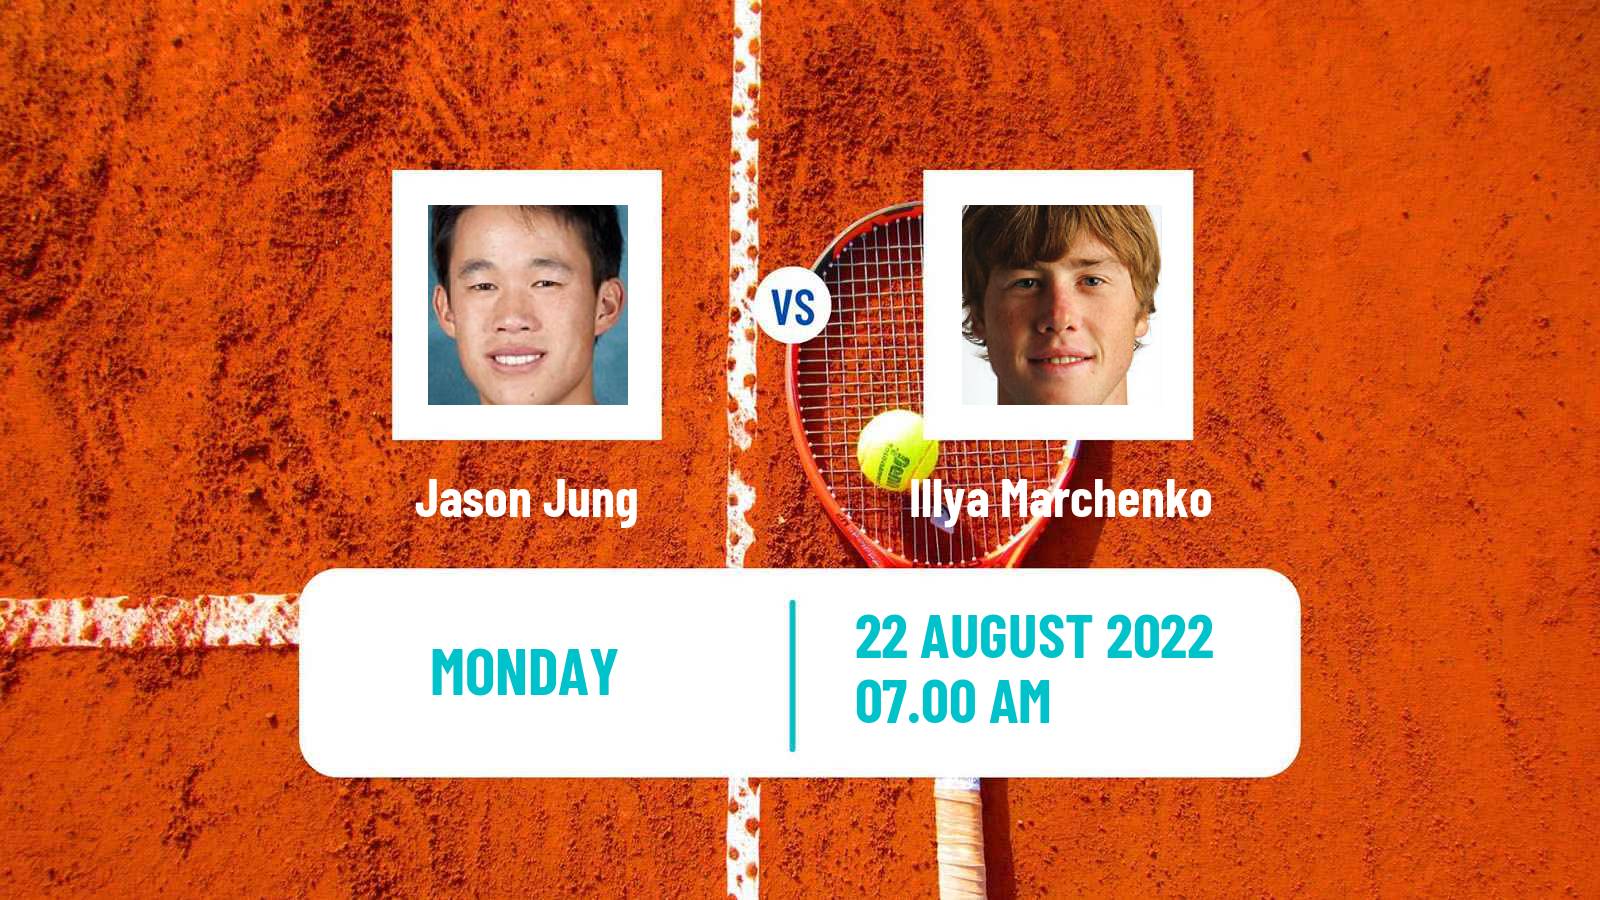 Tennis ATP Challenger Jason Jung - Illya Marchenko